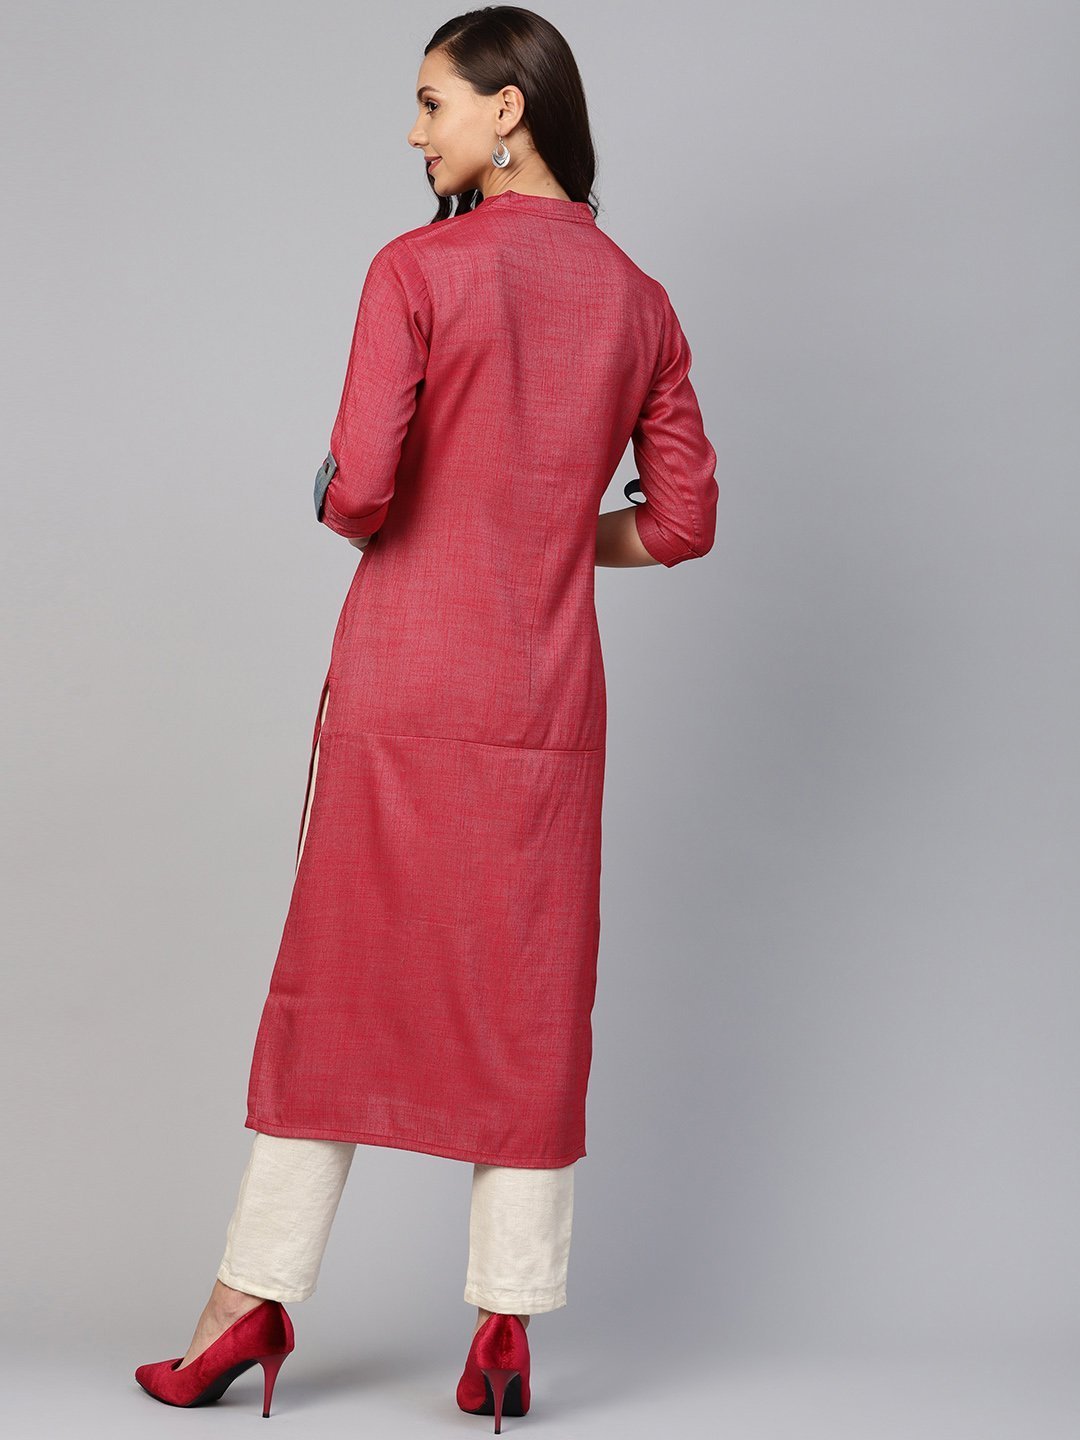 Women's Maroon Woven Design Straight Rayon Kurta - Jompers